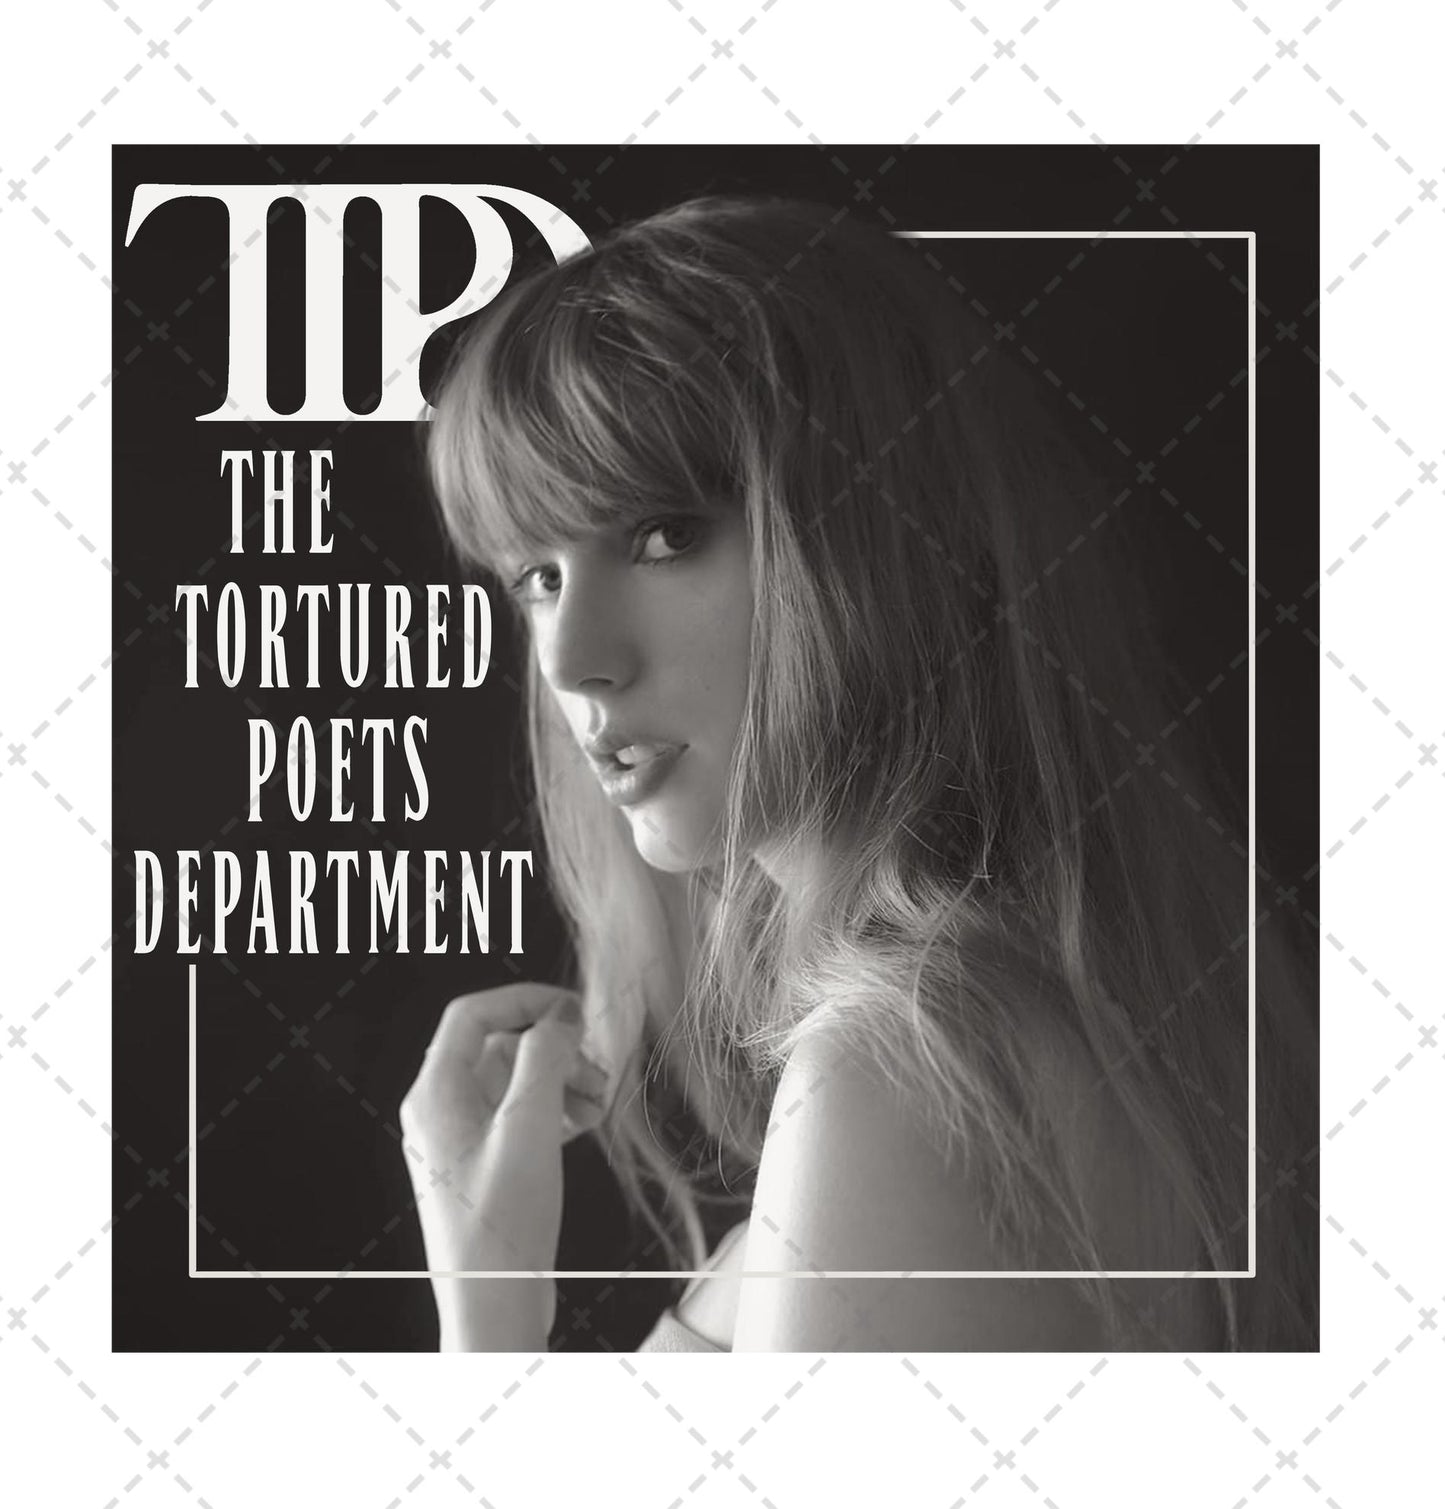 TTPD Album Design Transfer